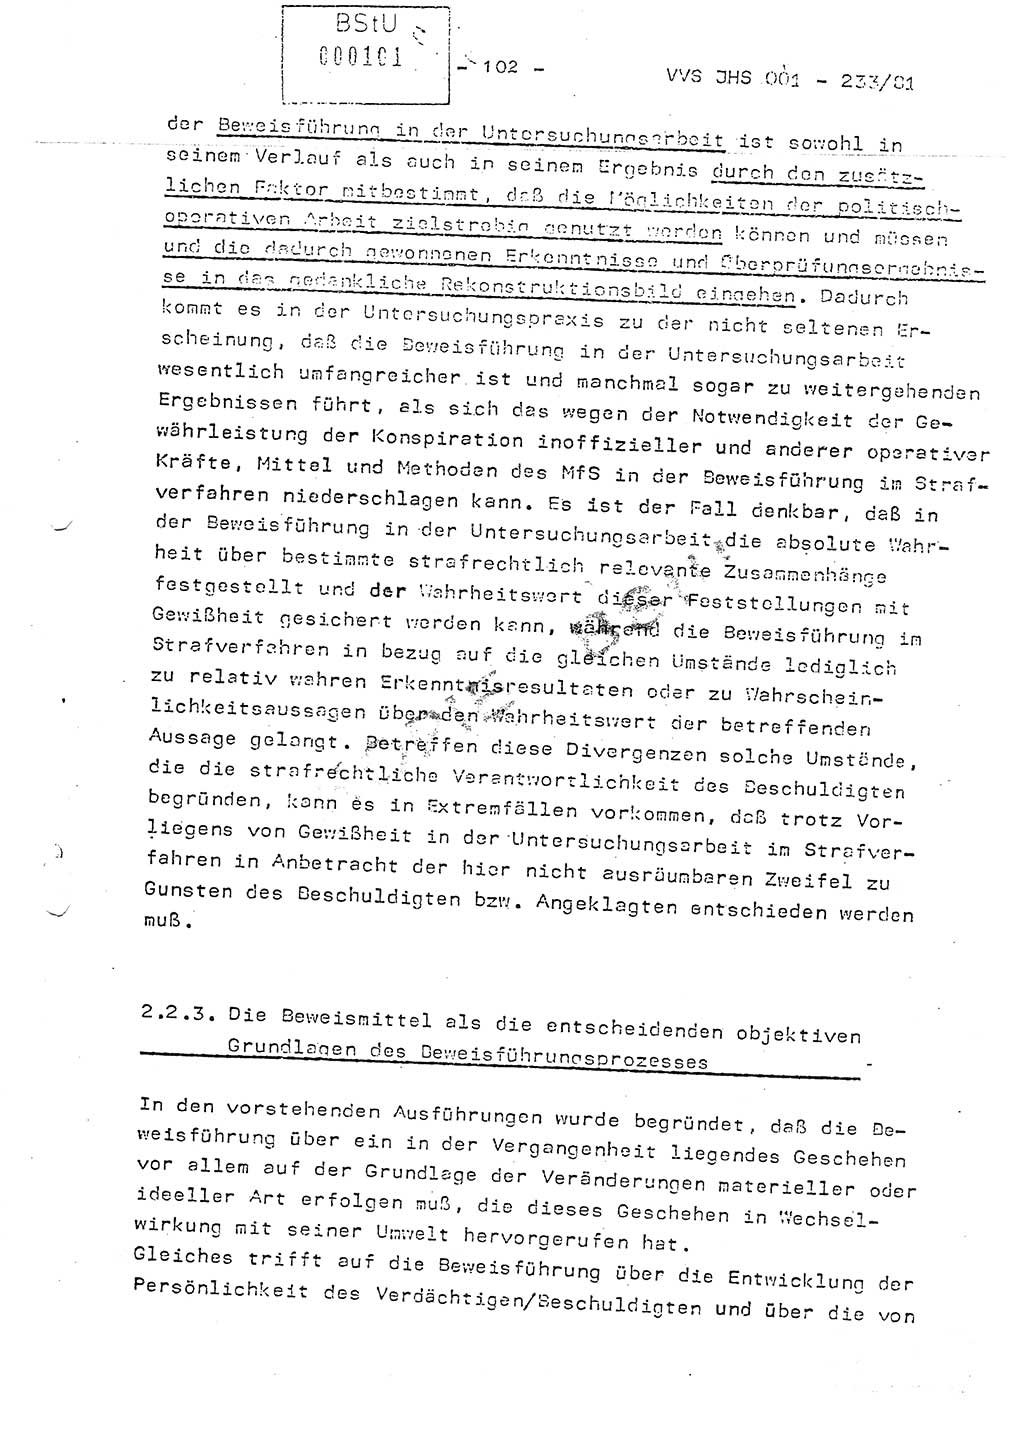 Dissertation Oberstleutnant Horst Zank (JHS), Oberstleutnant Dr. Karl-Heinz Knoblauch (JHS), Oberstleutnant Gustav-Adolf Kowalewski (HA Ⅸ), Oberstleutnant Wolfgang Plötner (HA Ⅸ), Ministerium für Staatssicherheit (MfS) [Deutsche Demokratische Republik (DDR)], Juristische Hochschule (JHS), Vertrauliche Verschlußsache (VVS) o001-233/81, Potsdam 1981, Blatt 102 (Diss. MfS DDR JHS VVS o001-233/81 1981, Bl. 102)